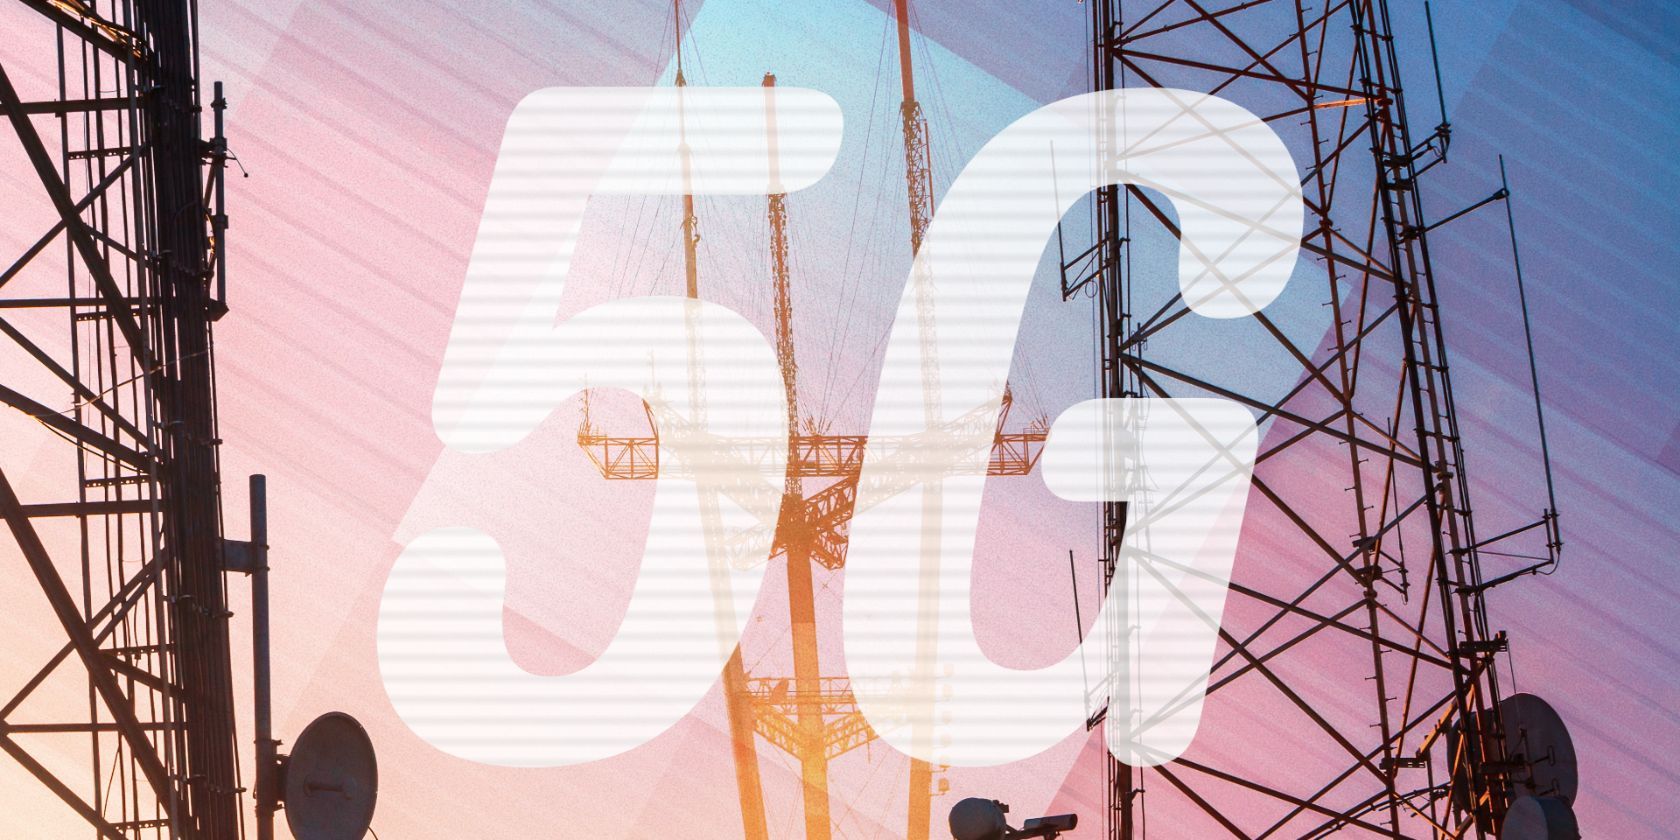 O texto ‘5G’ sobre uma imagem de torres de celular